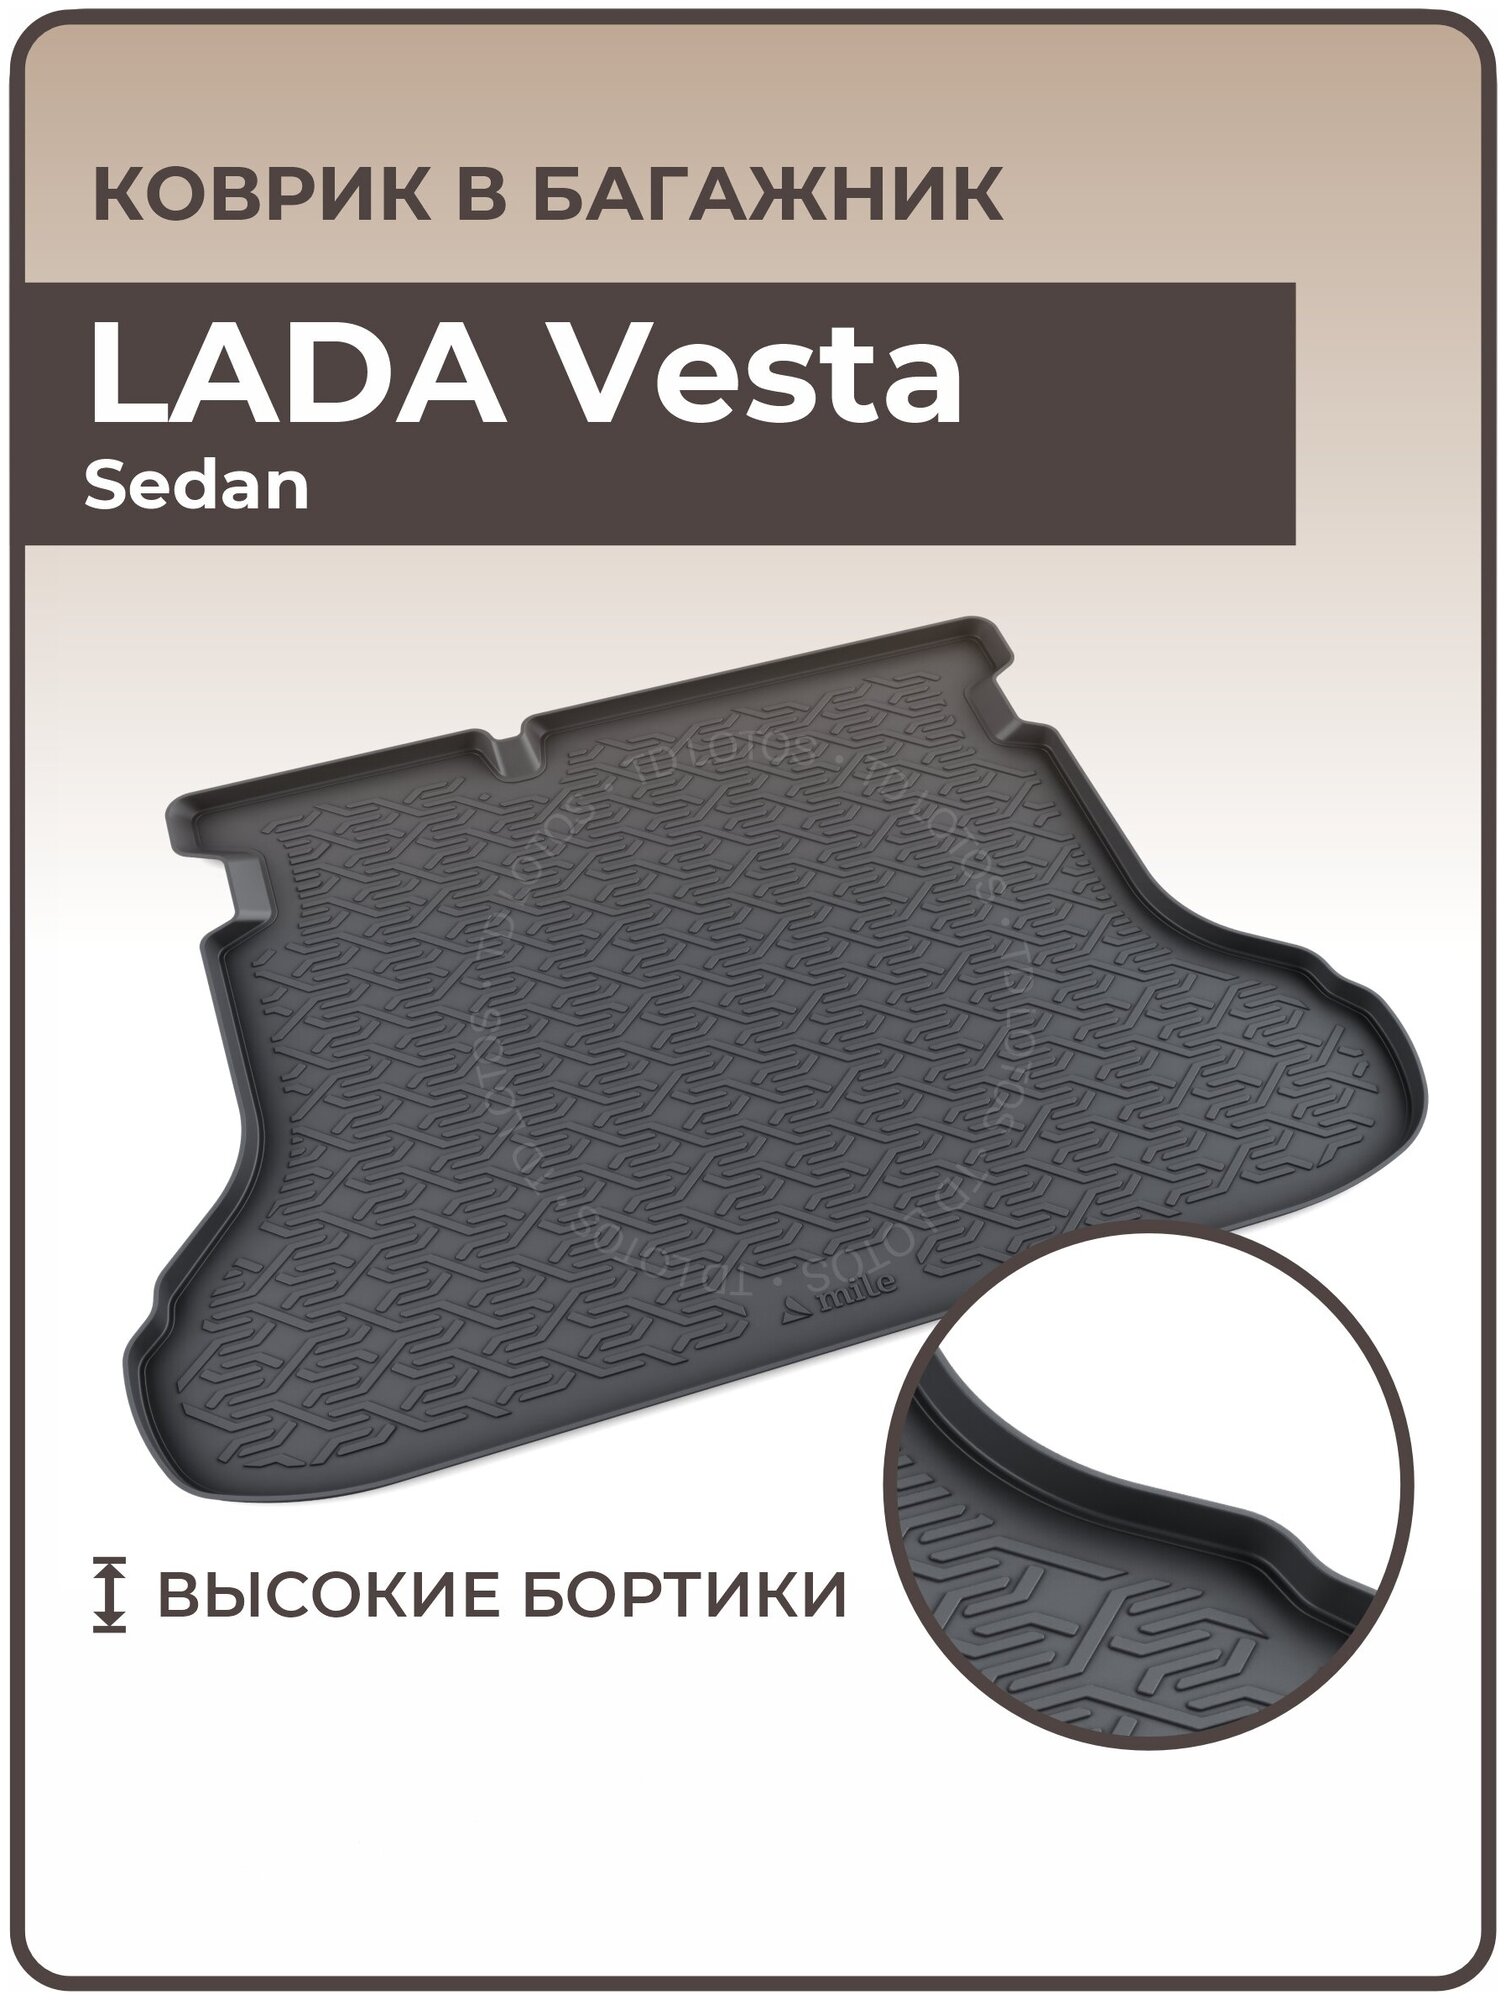 Коврики 3D в багажник автомобиля LADA Vesta Sedan/ковры багажника в машину лада веста